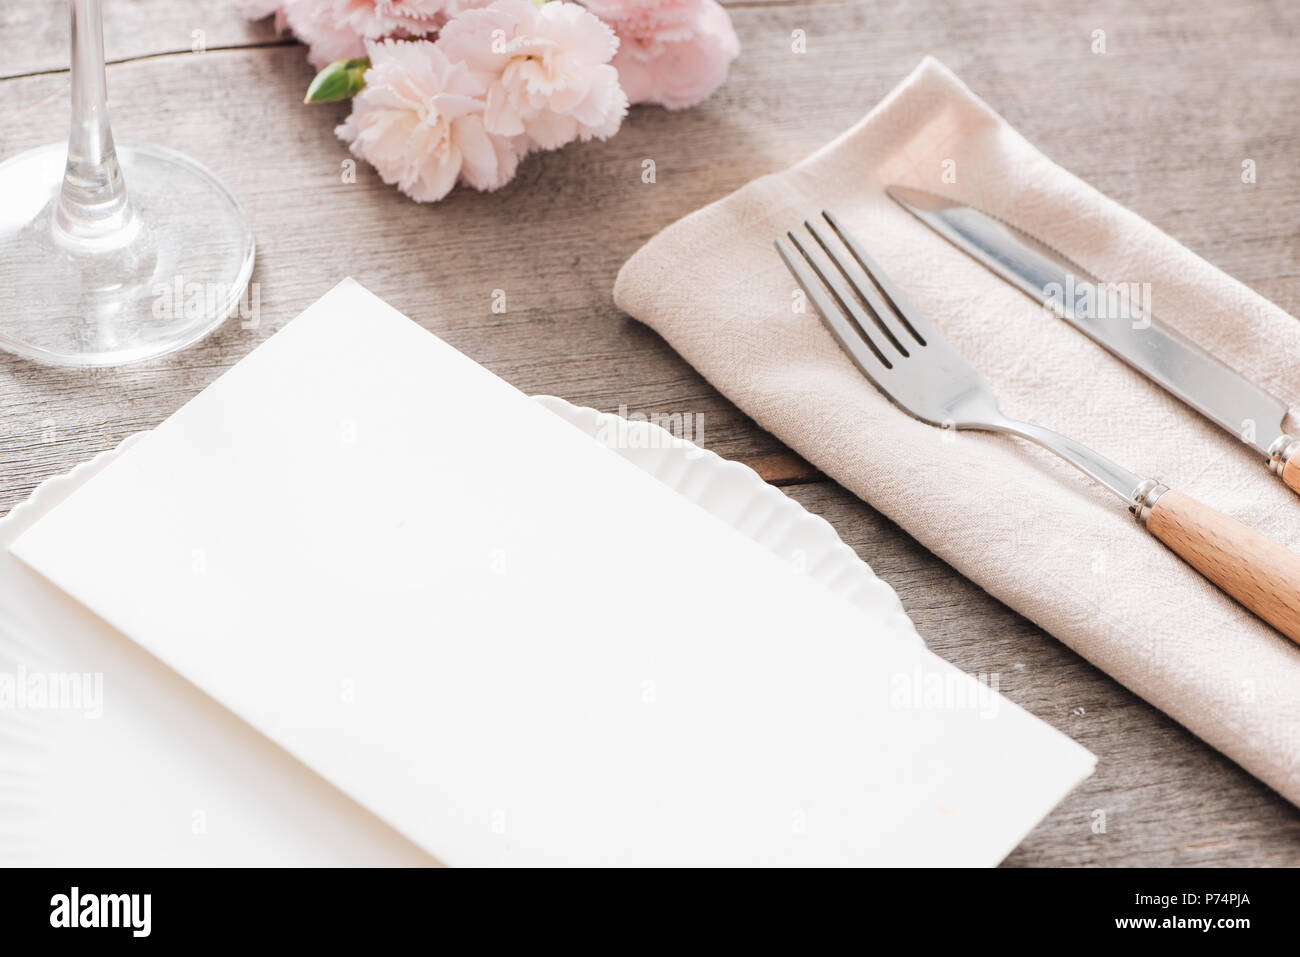 Décoration de table avec des fleurs de printemps. Les plaques blanches, fourchette, couteau sur plaque de bois Banque D'Images